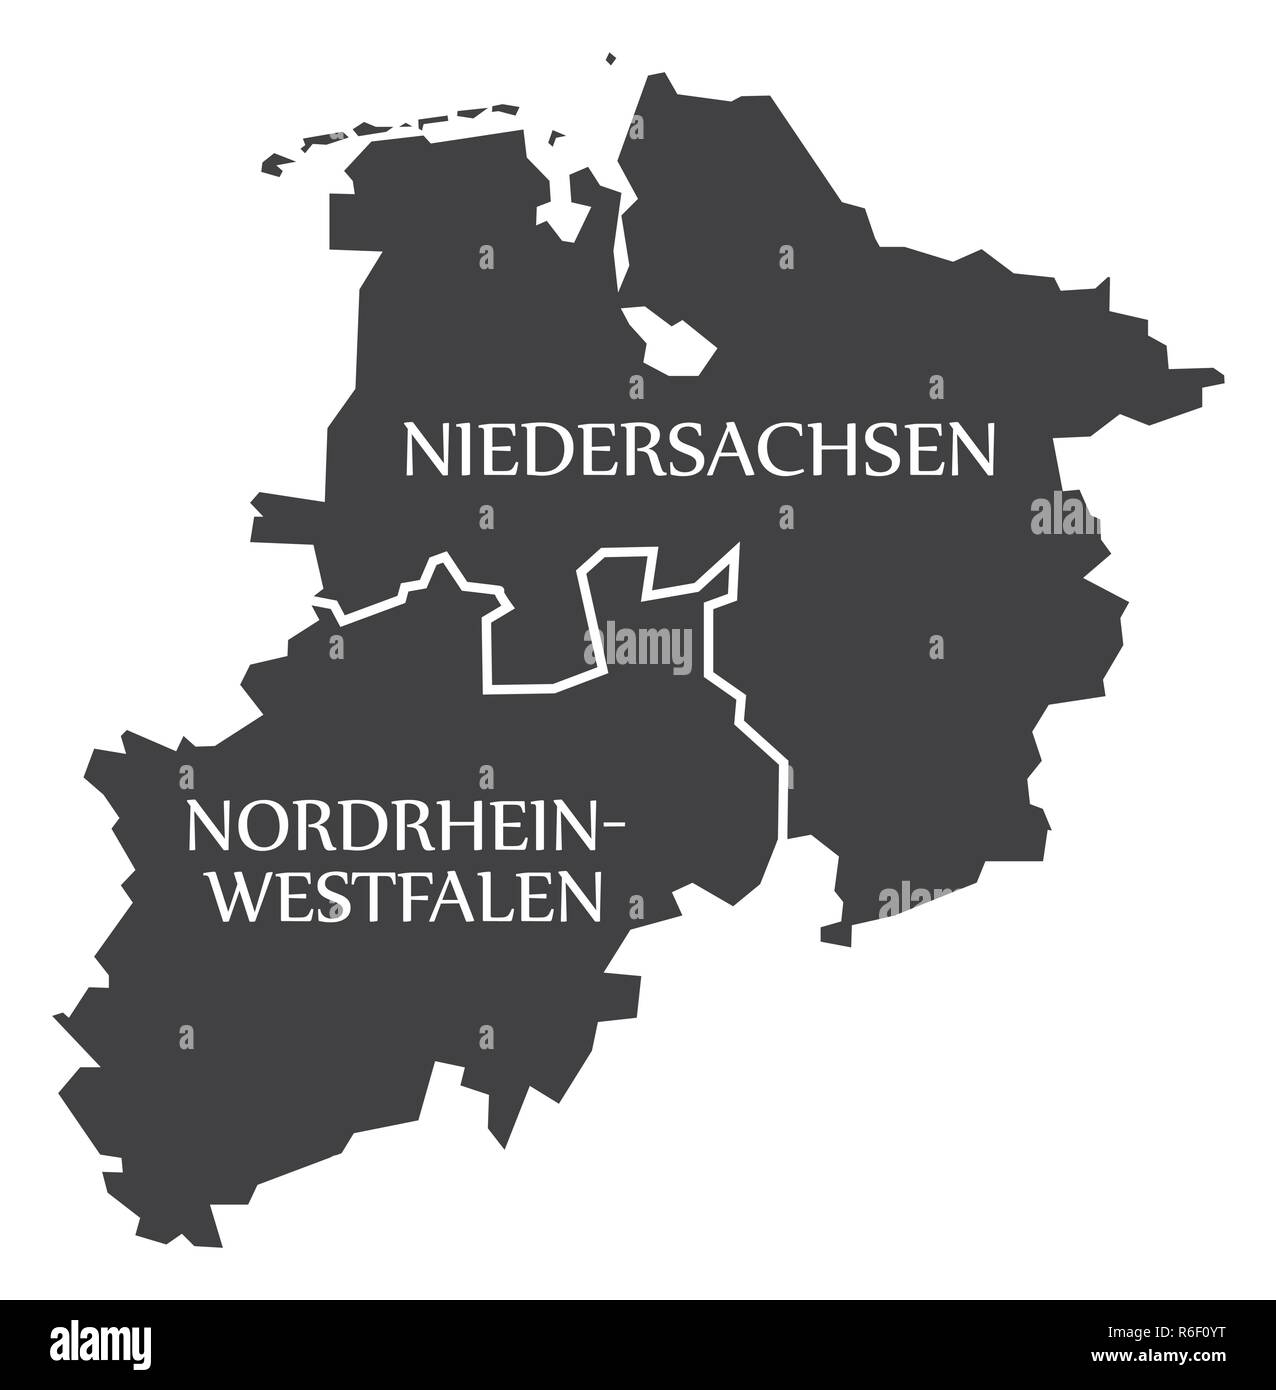 Niedersachsen - Nordrhein-westfalen Bundesländer Karte von Deutschland schwarz mit Titel Stock Vektor